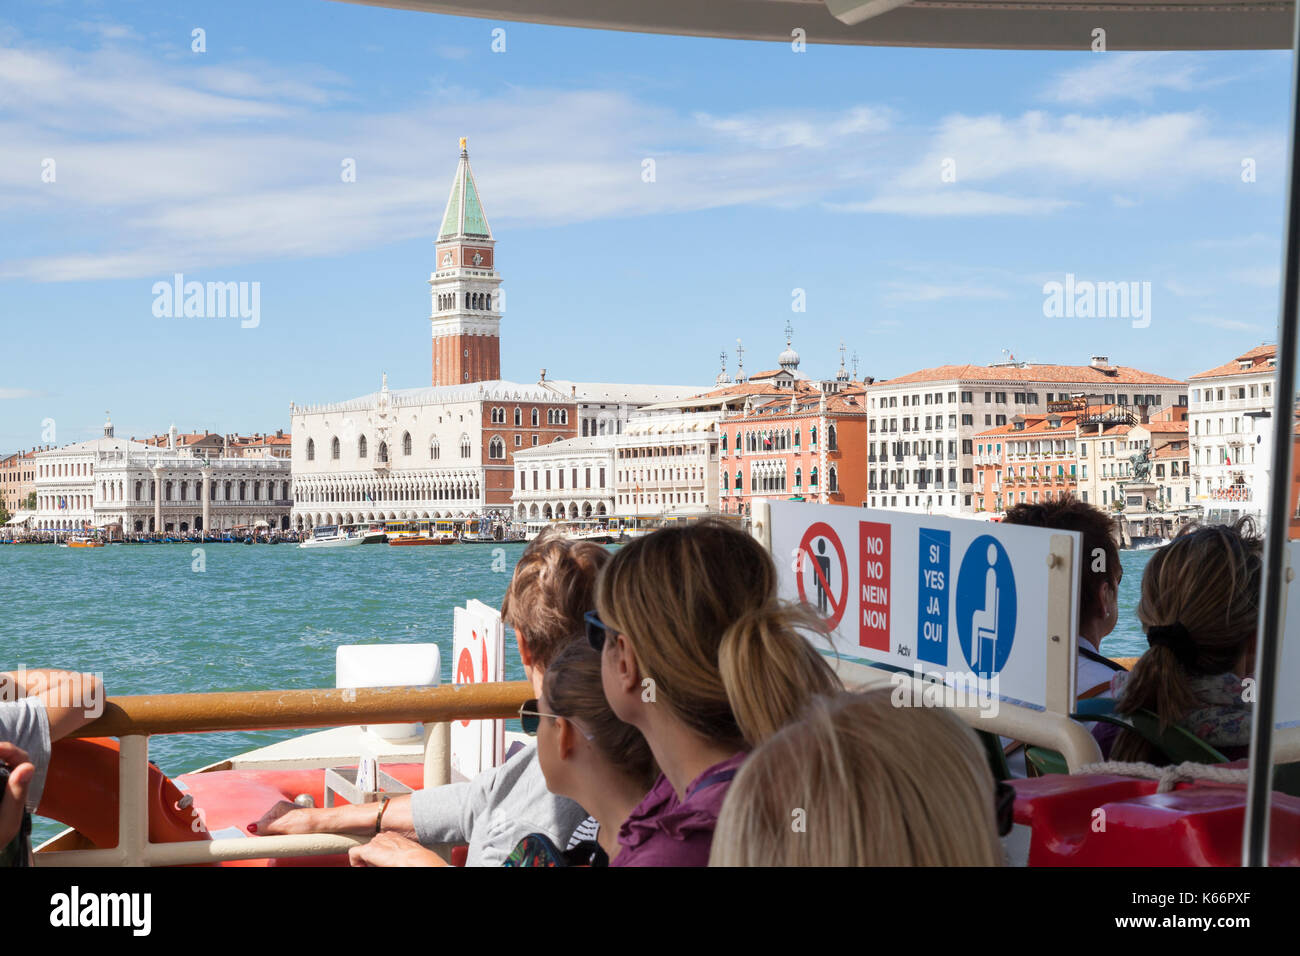 Touristen auf einem Vaporetto, den Dogenpalast, Venedig, Venetien, Italien in der ersten Person Sicht nach vorne aus dem Wasserbus Transport als s Stockfoto